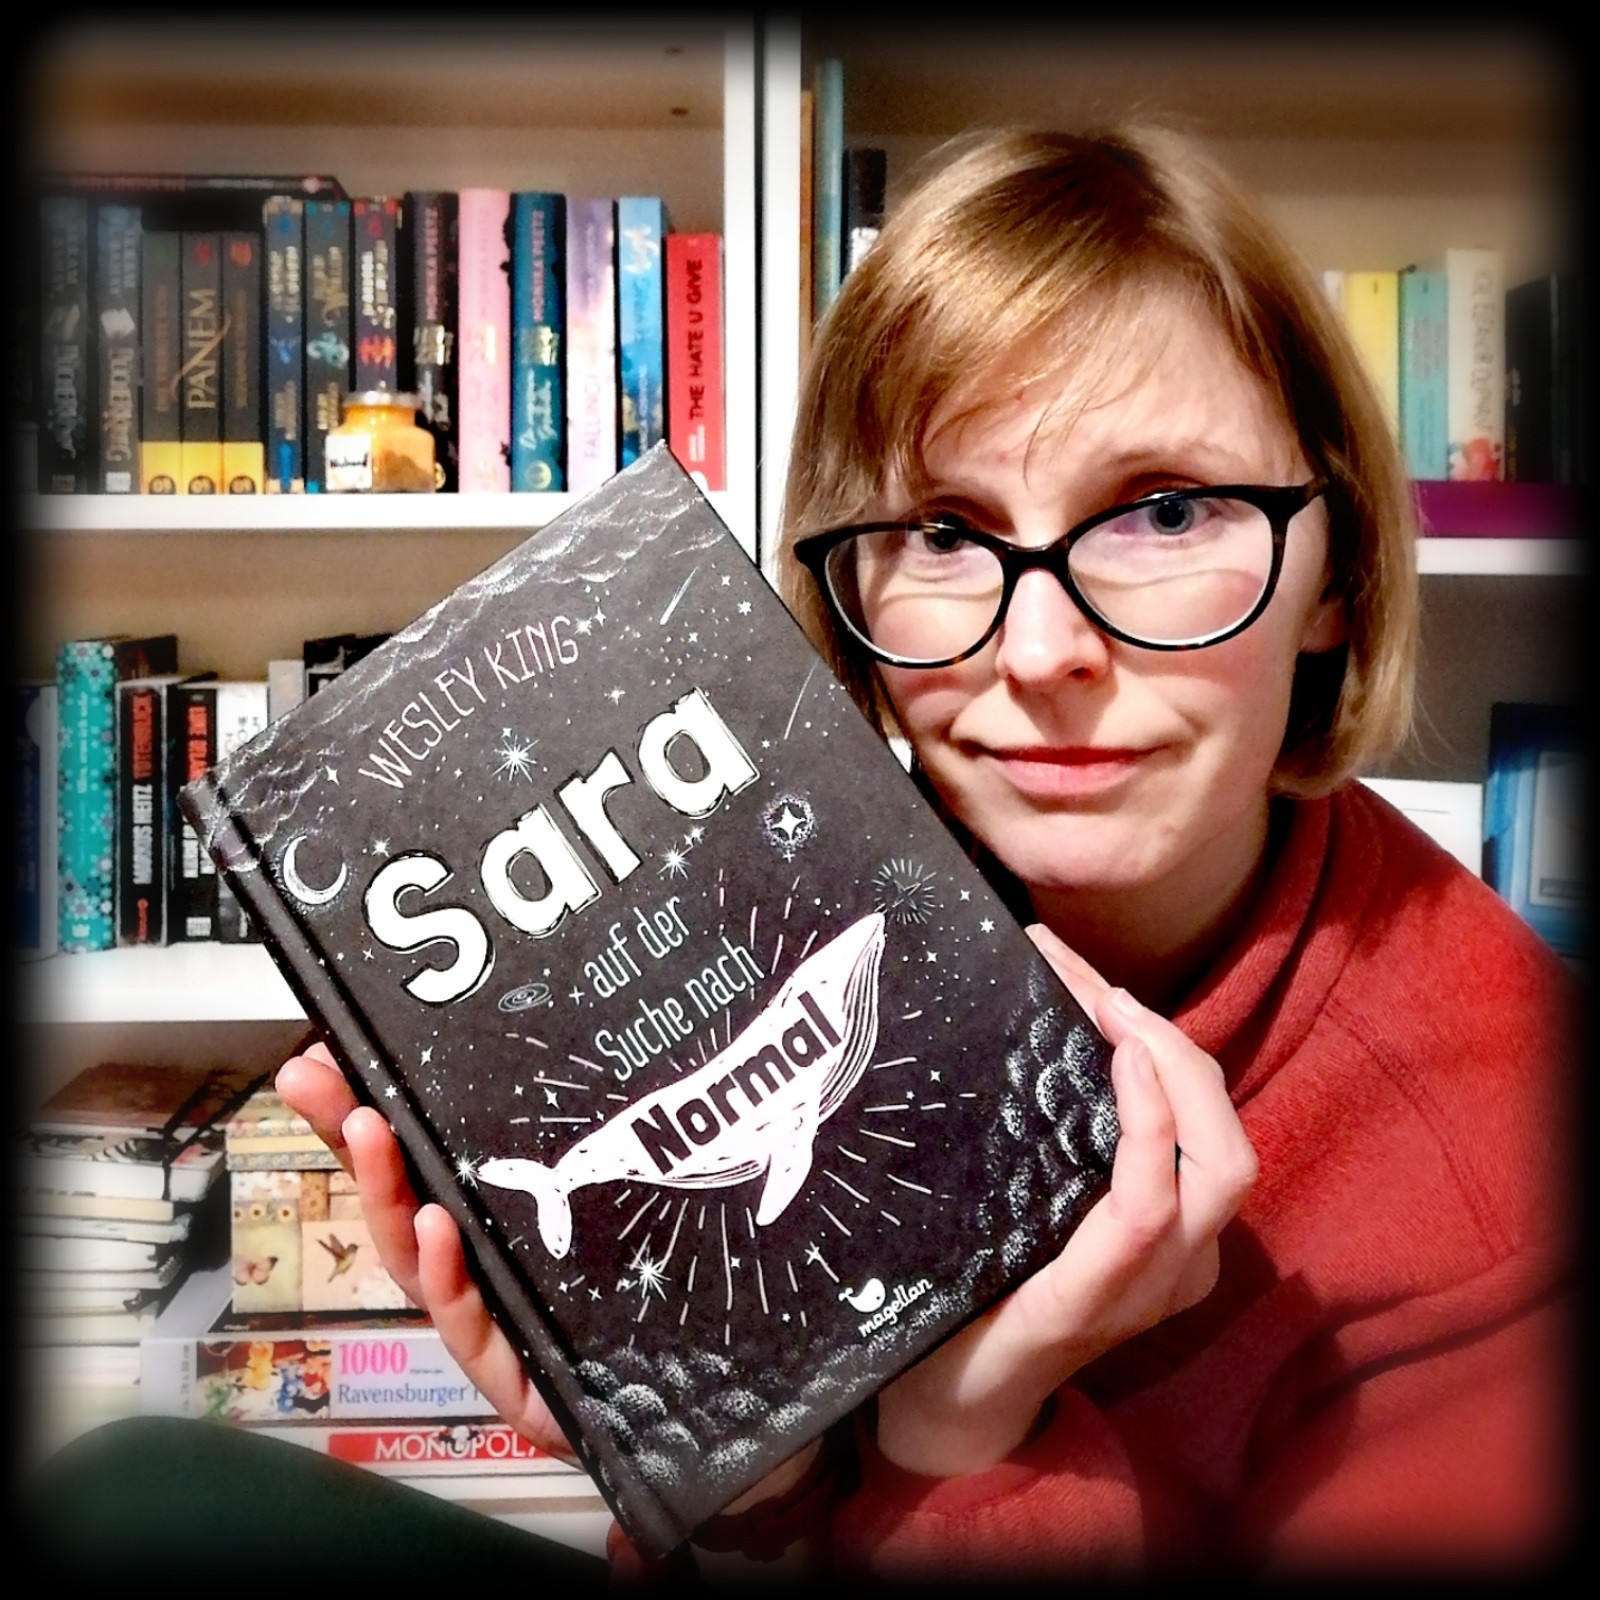 „Sara auf der Suche nach Normal“ von Wesley King – Ist Normal das, was andere uns sagen?